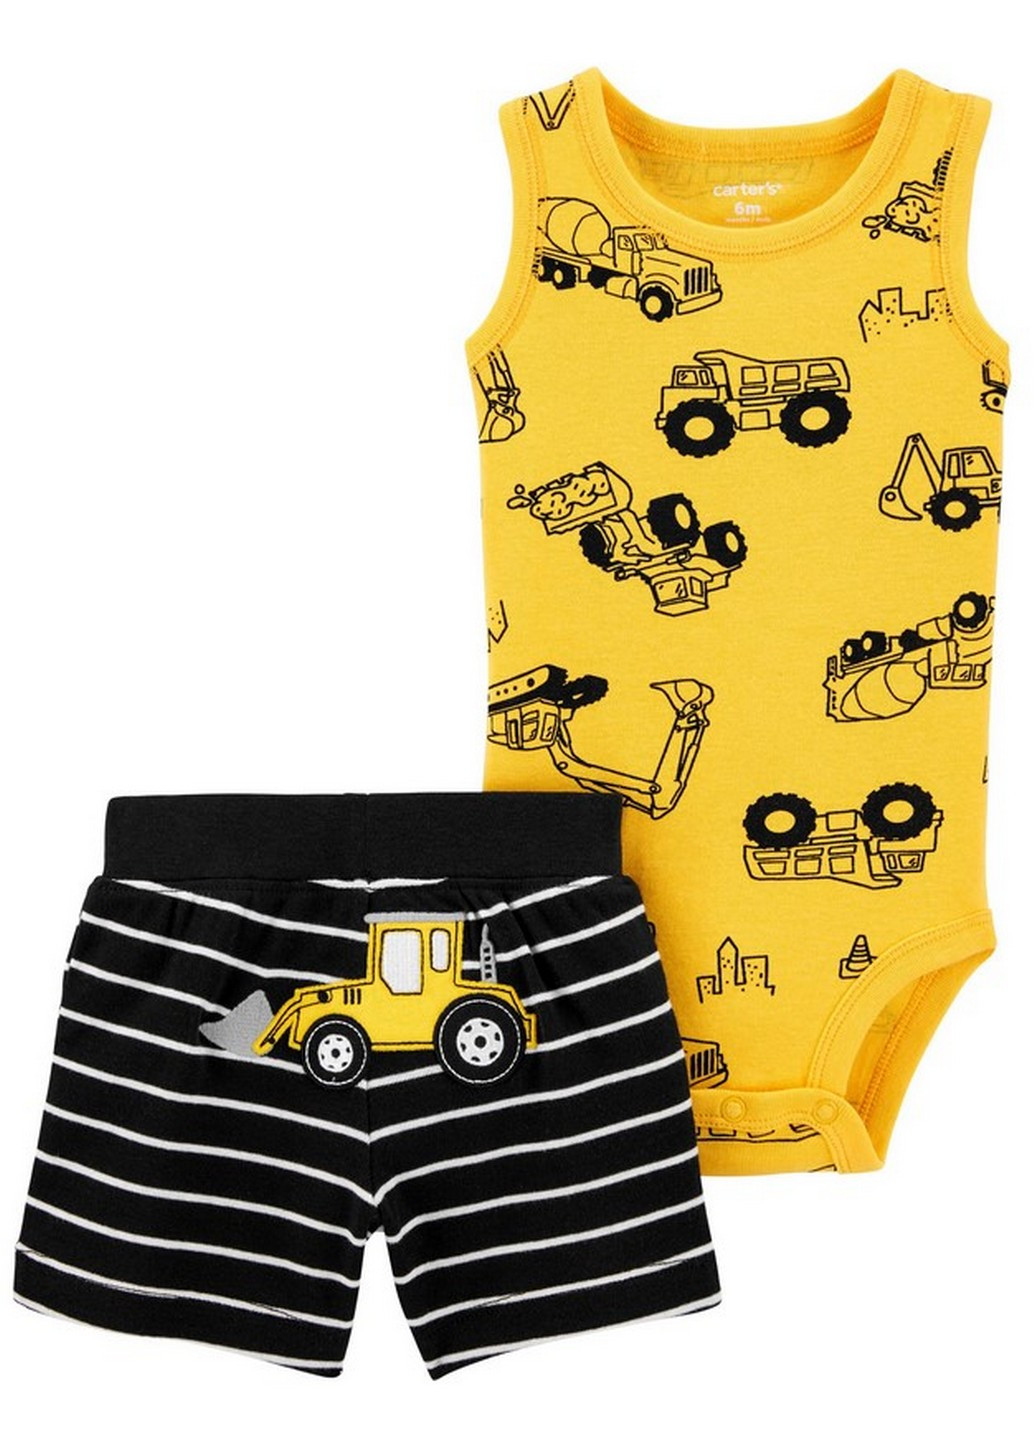 Желтый демисезонный боди-майка и шорты для мальчика Carter's